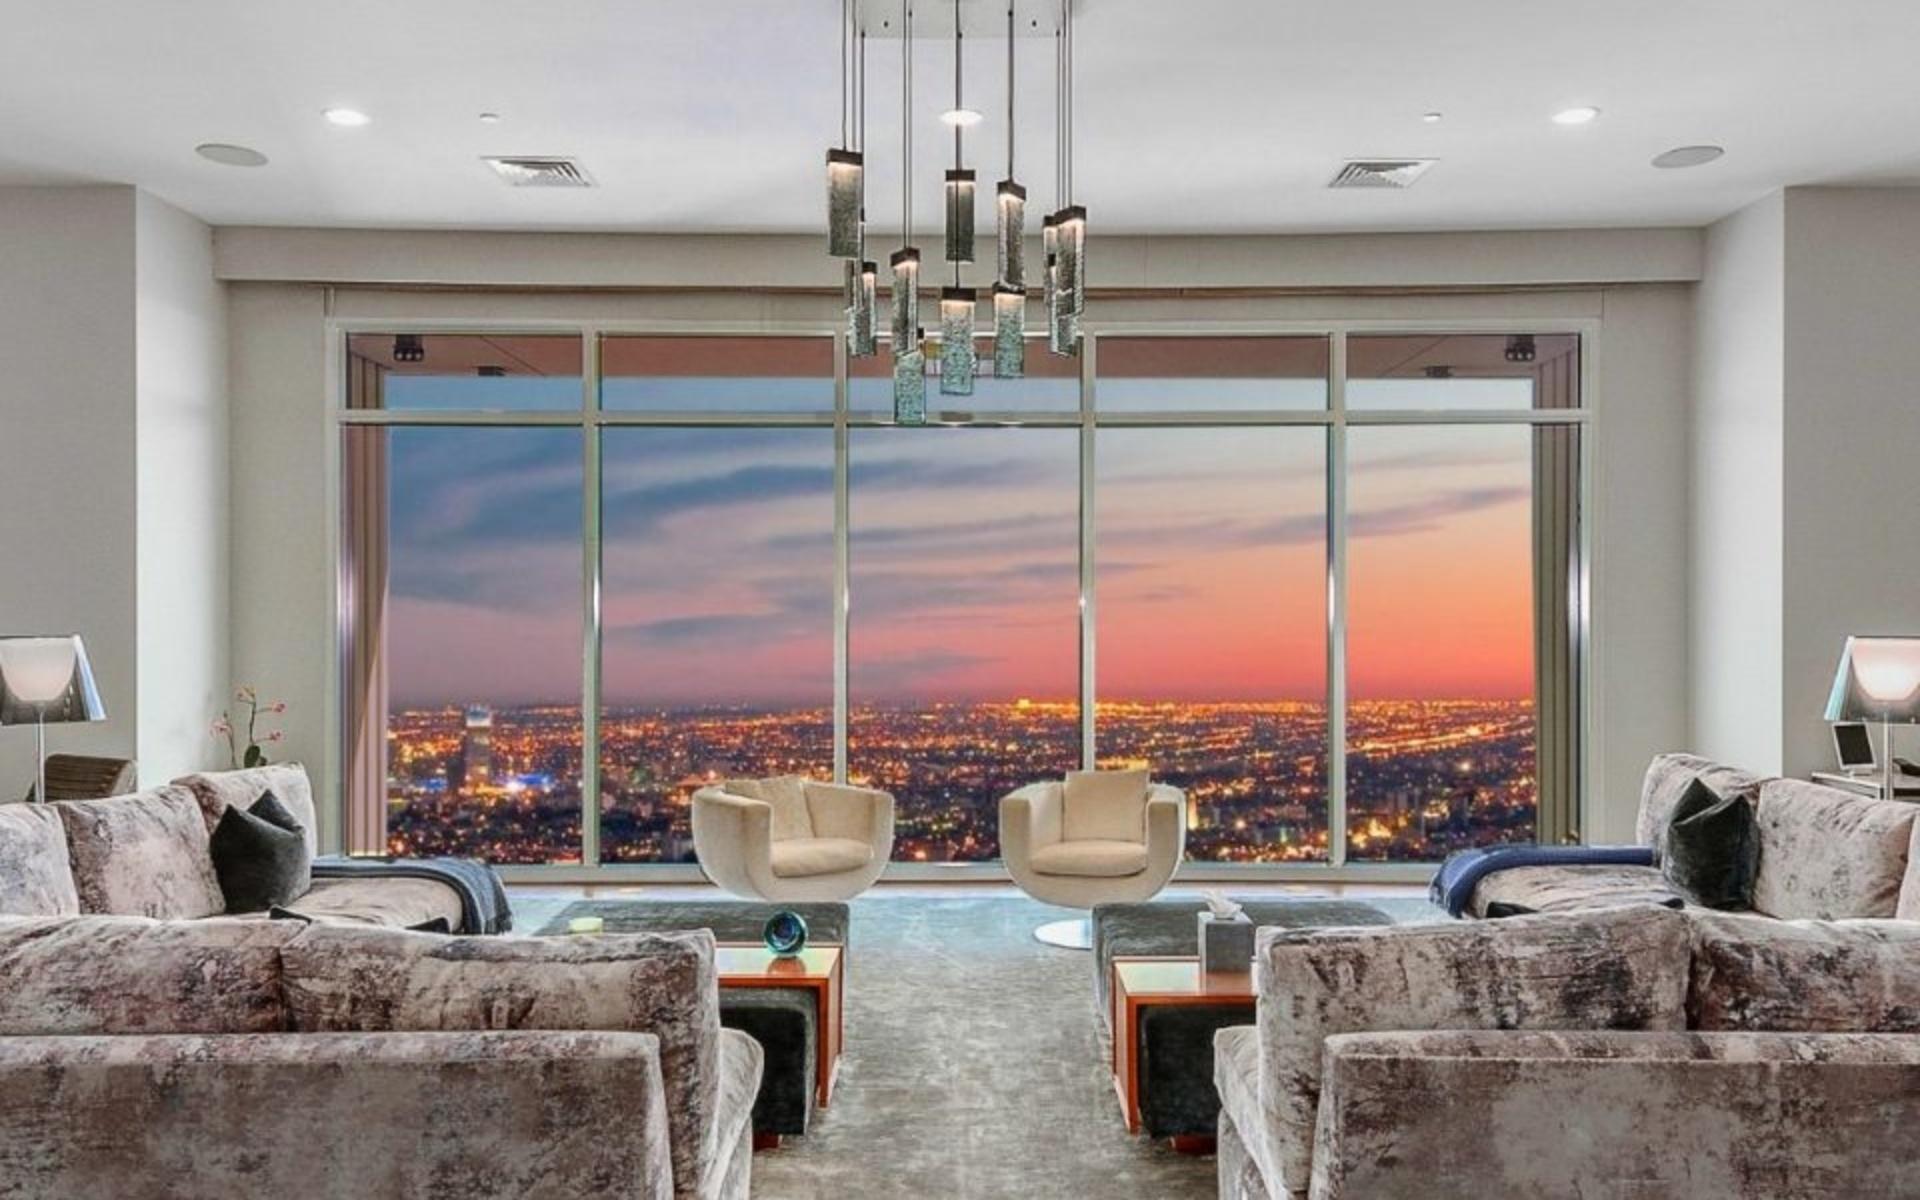 Matthew Perry köpte våning 40 2017 för cirka 170 miljoner kronor.